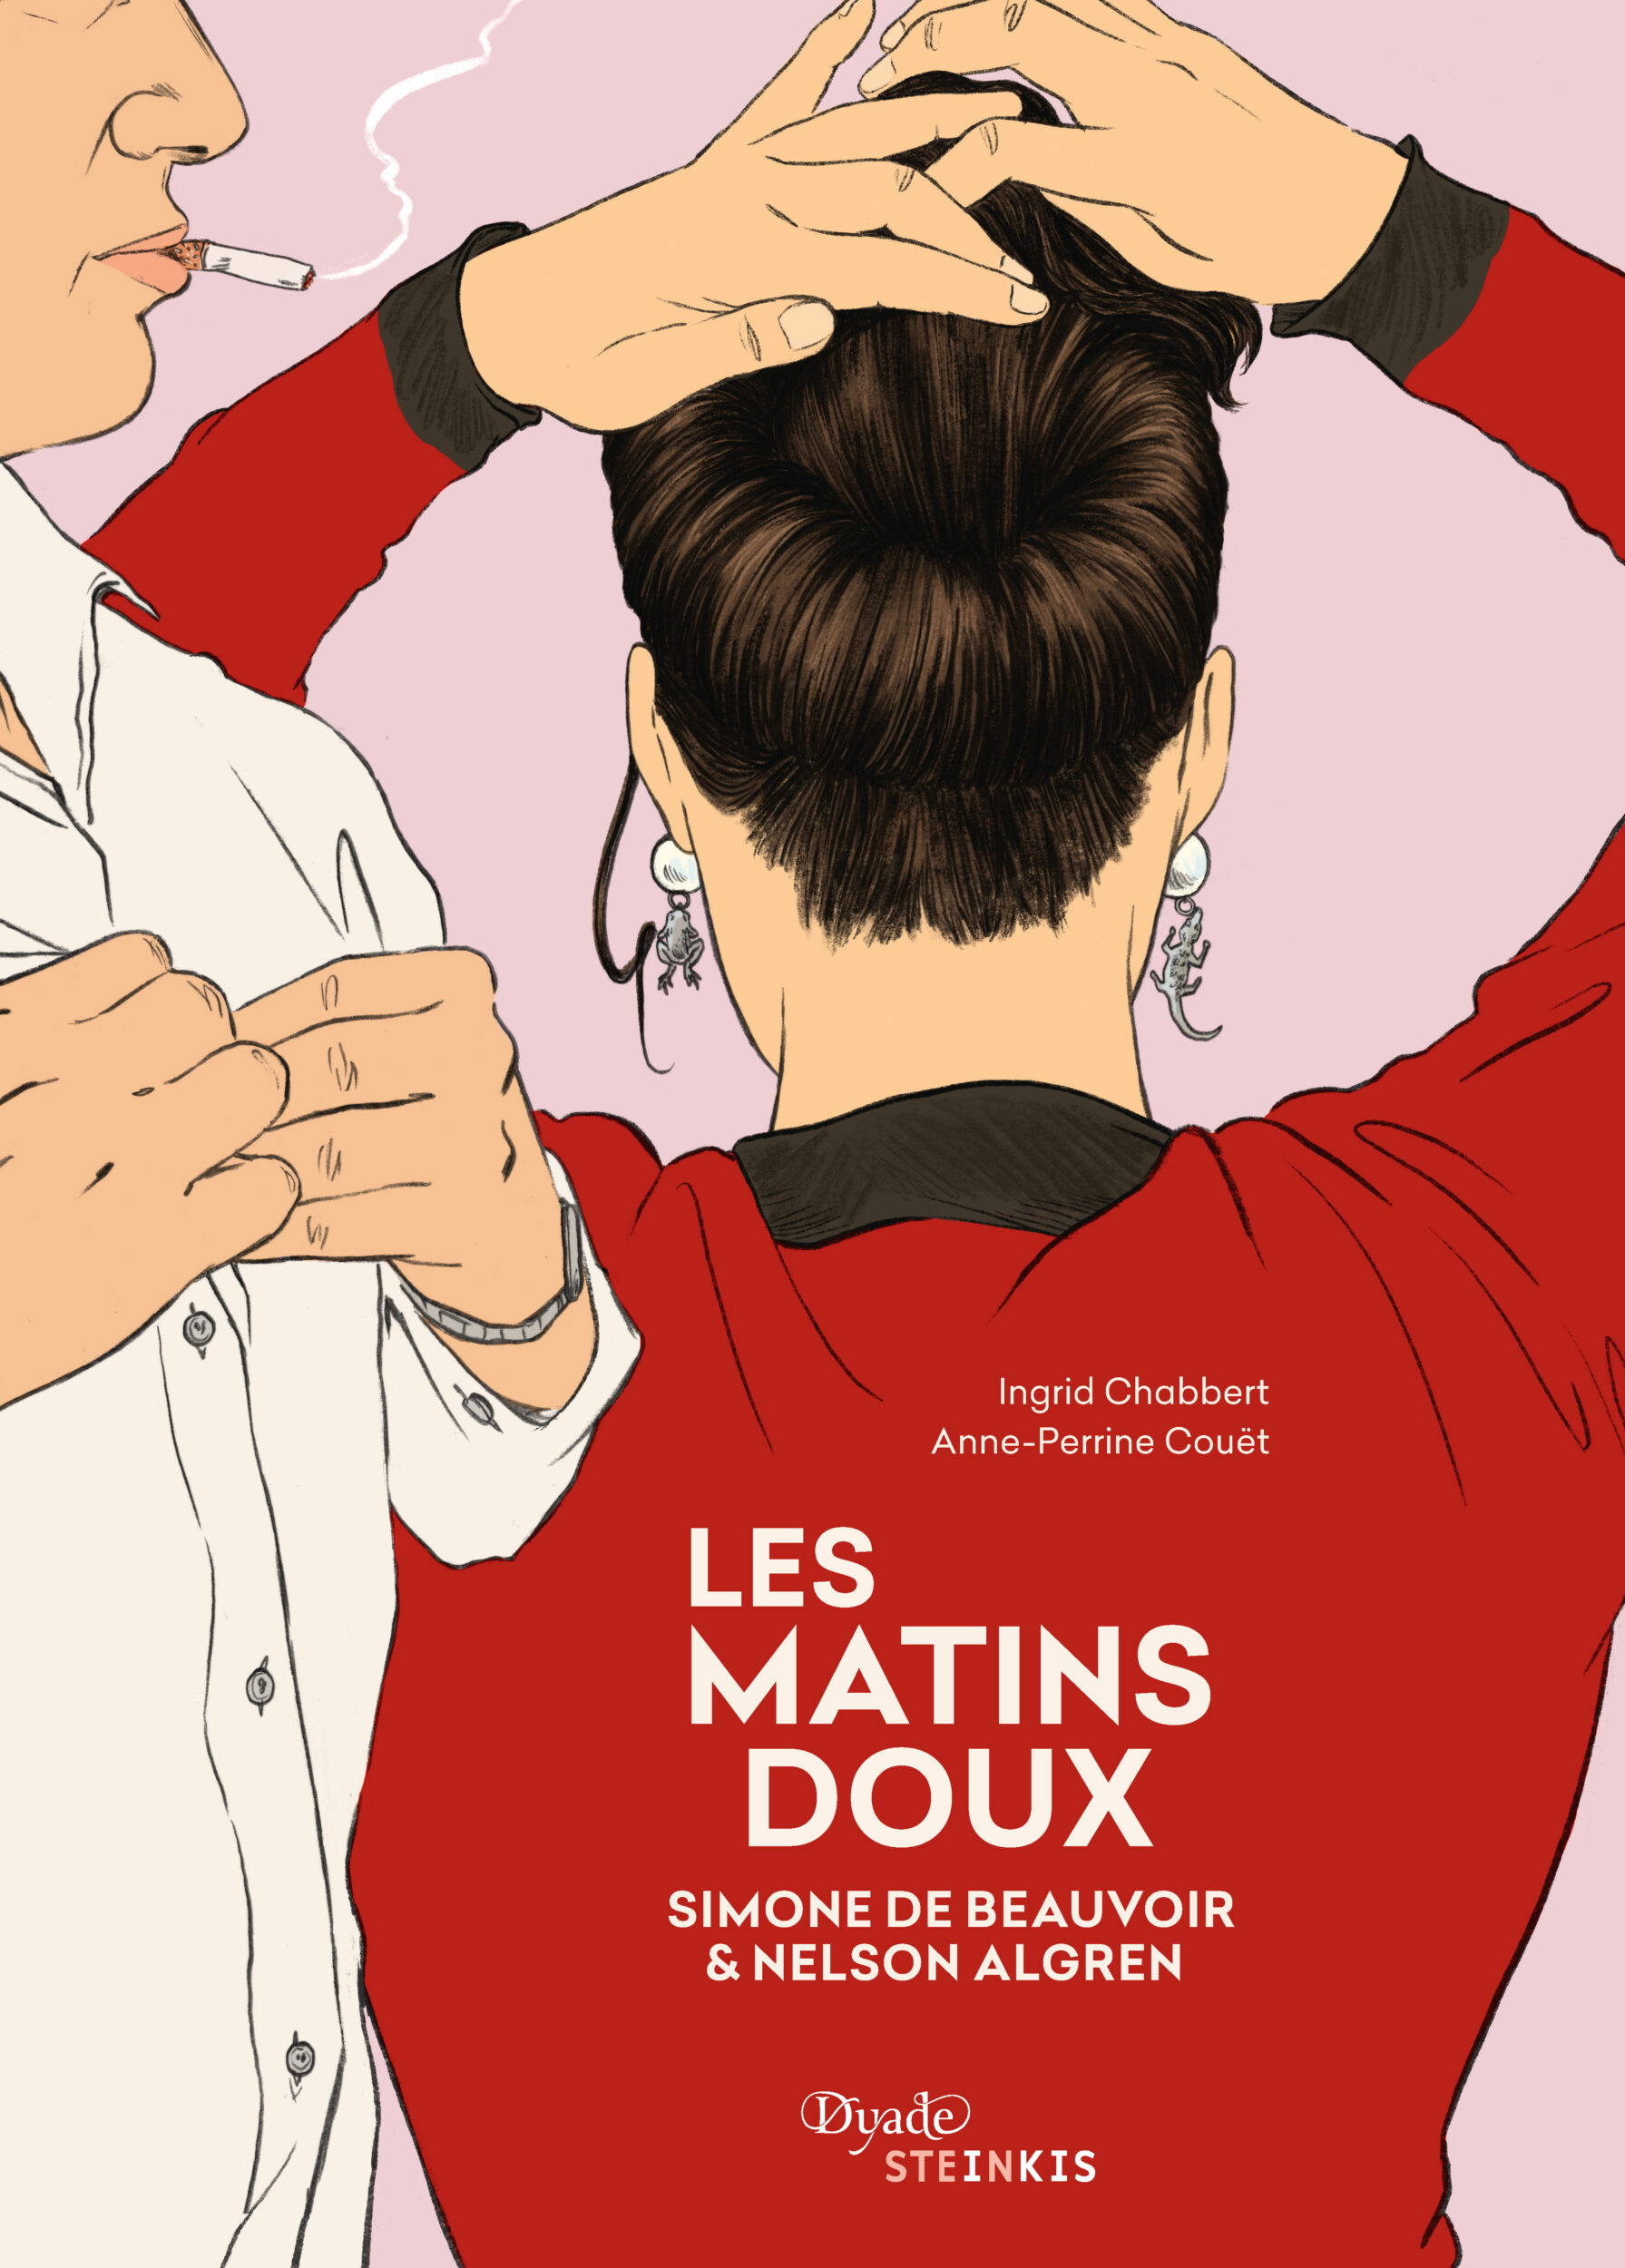 Couverture du roman graphique, Les matins doux. // Source : Photo des Éditions Steinkis